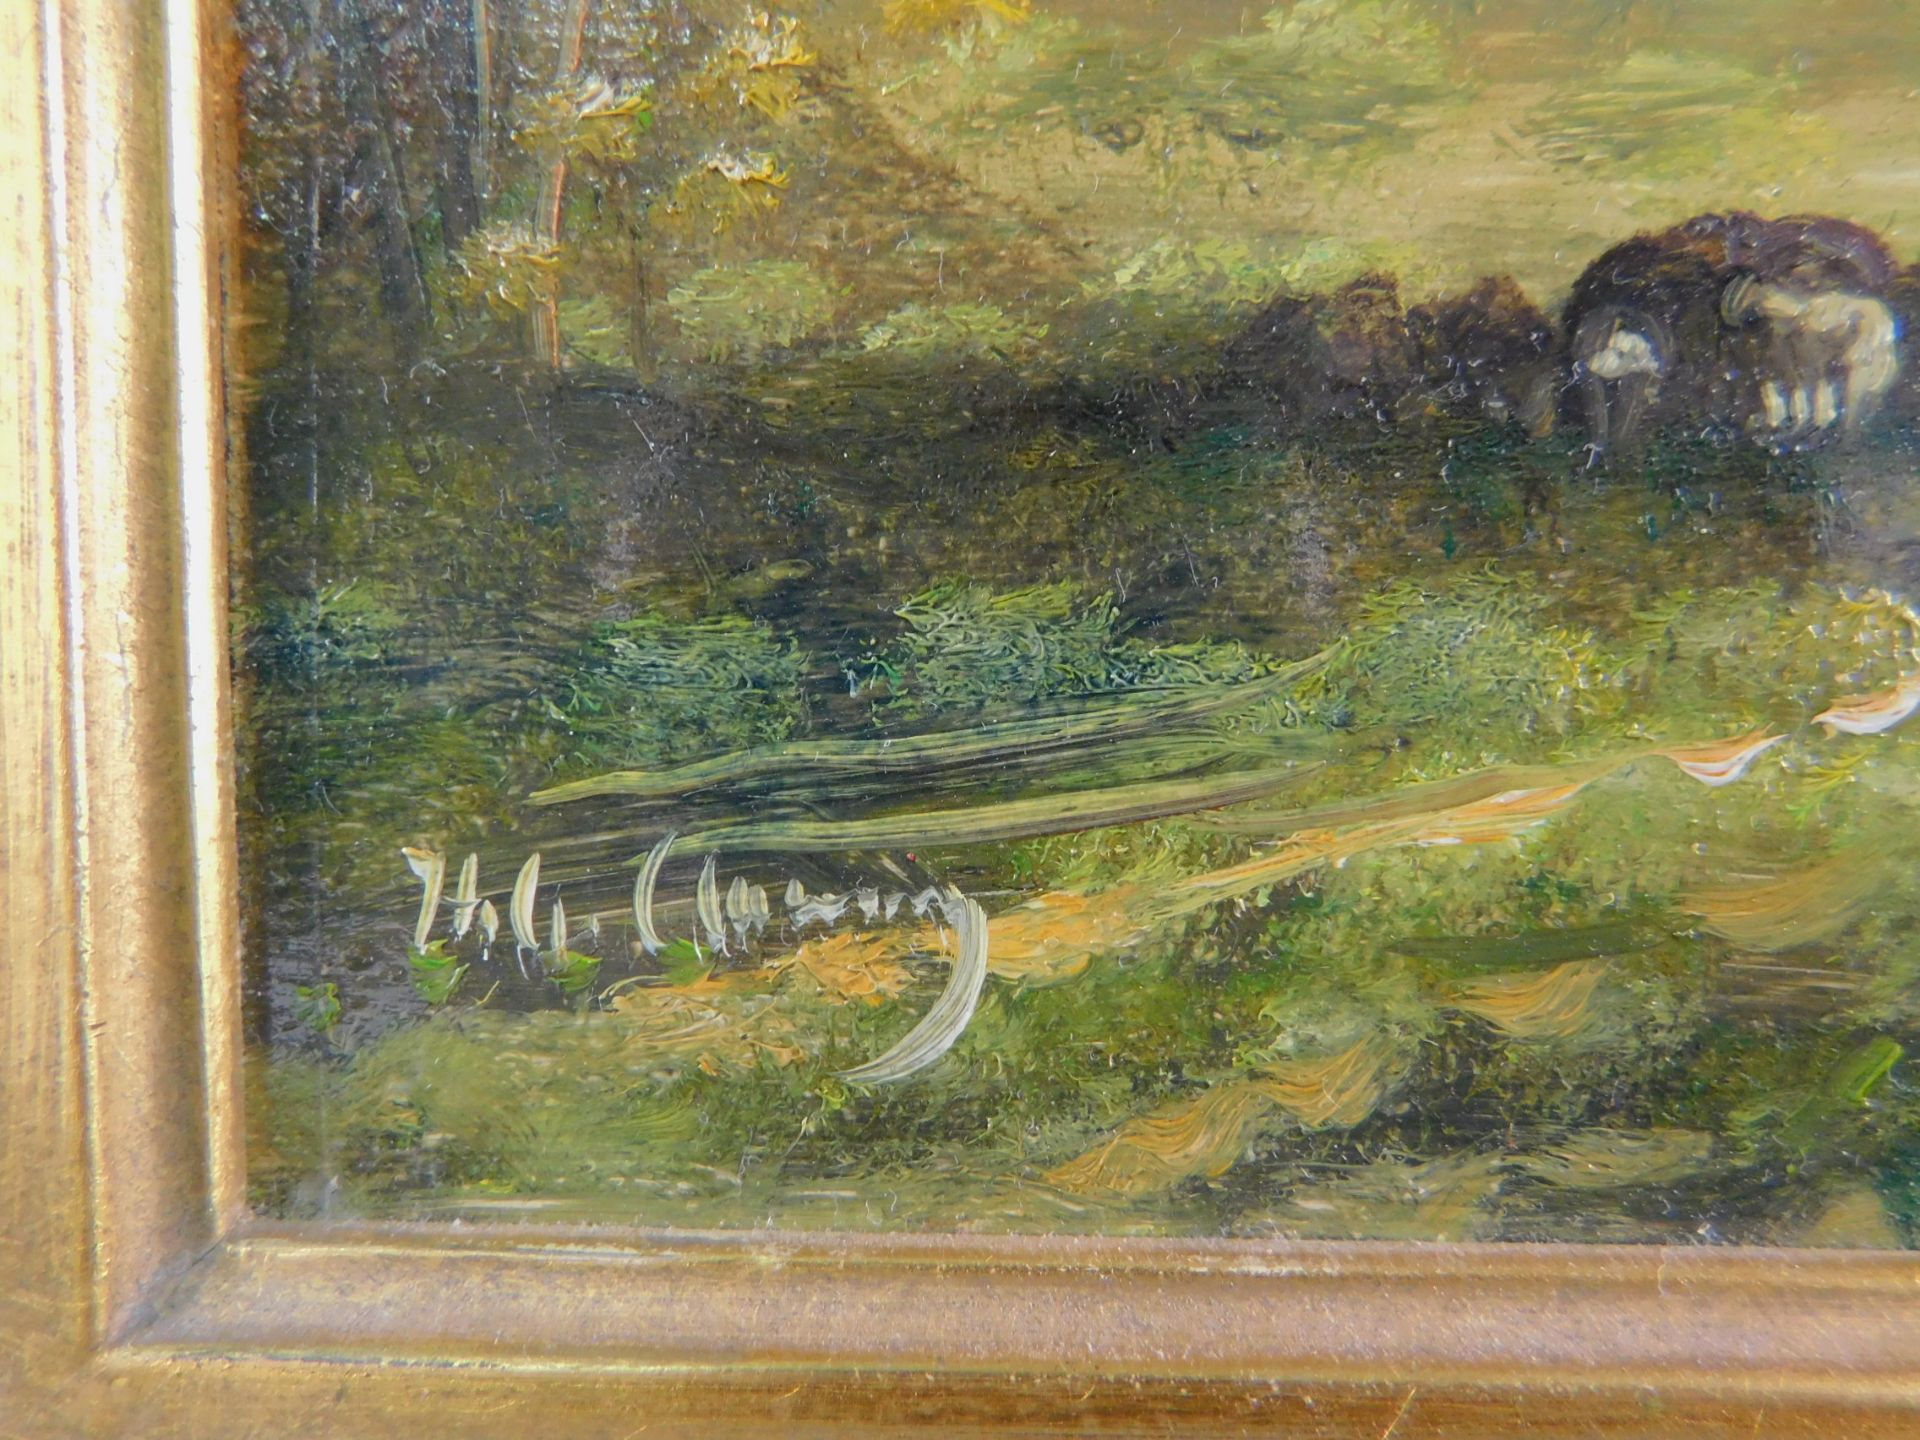 H.G. Clemens (*1941 Nürnberg), Landschaft, Öl/Leinwand, signiert unten links, 18 x 24 cm - Bild 3 aus 3